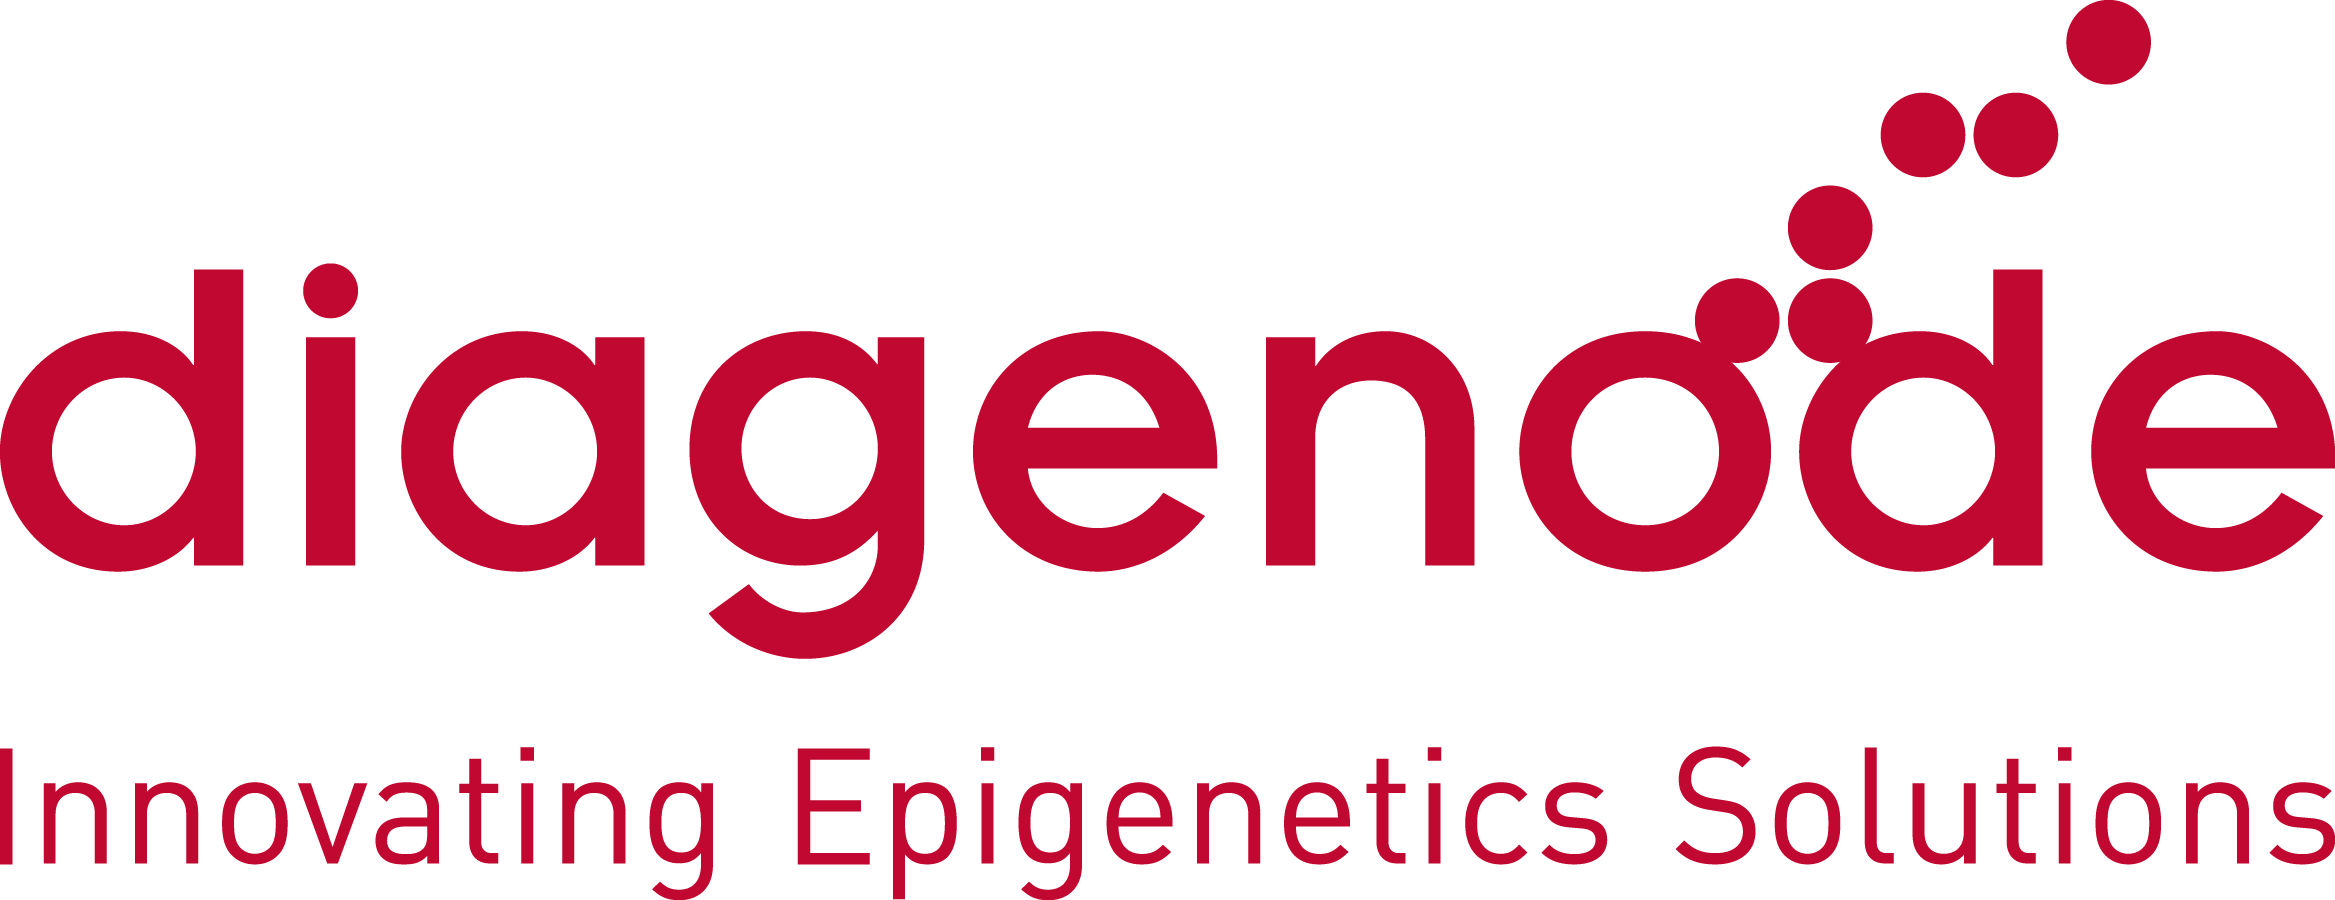 2020-03/logo-diagenode-epi.png